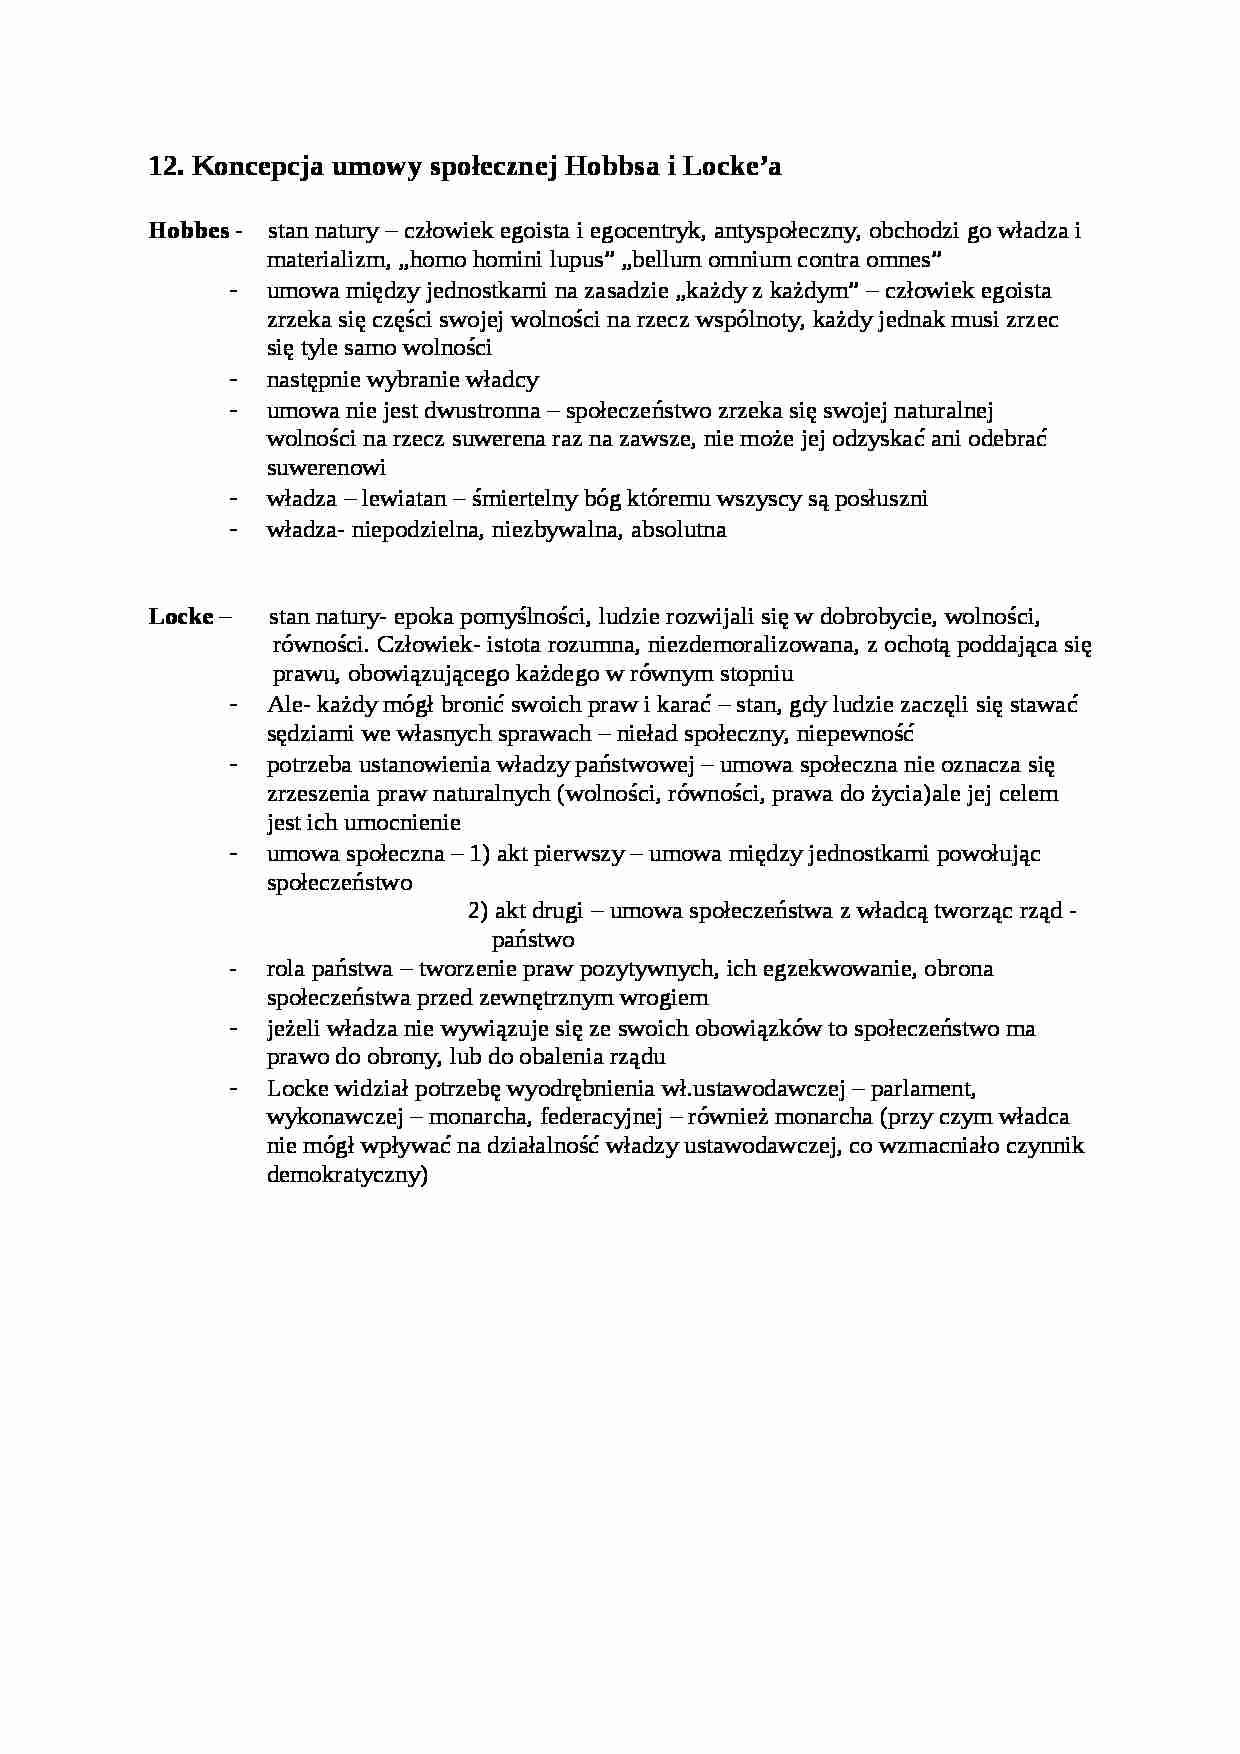 Umowa społeczna- opracowanie - strona 1